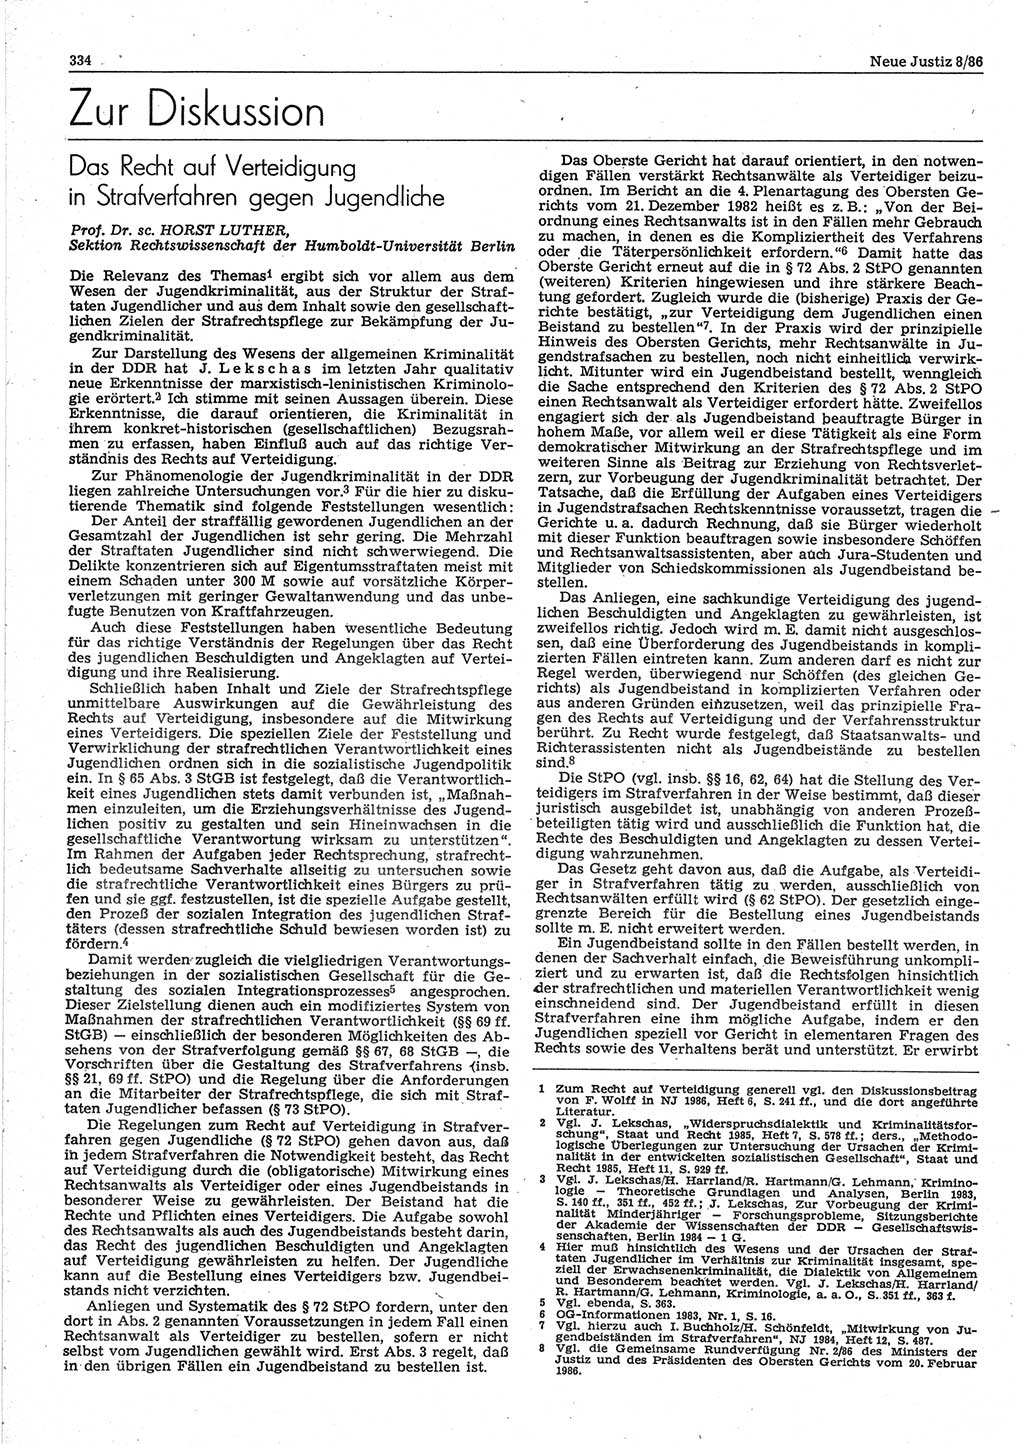 Neue Justiz (NJ), Zeitschrift für sozialistisches Recht und Gesetzlichkeit [Deutsche Demokratische Republik (DDR)], 40. Jahrgang 1986, Seite 334 (NJ DDR 1986, S. 334)